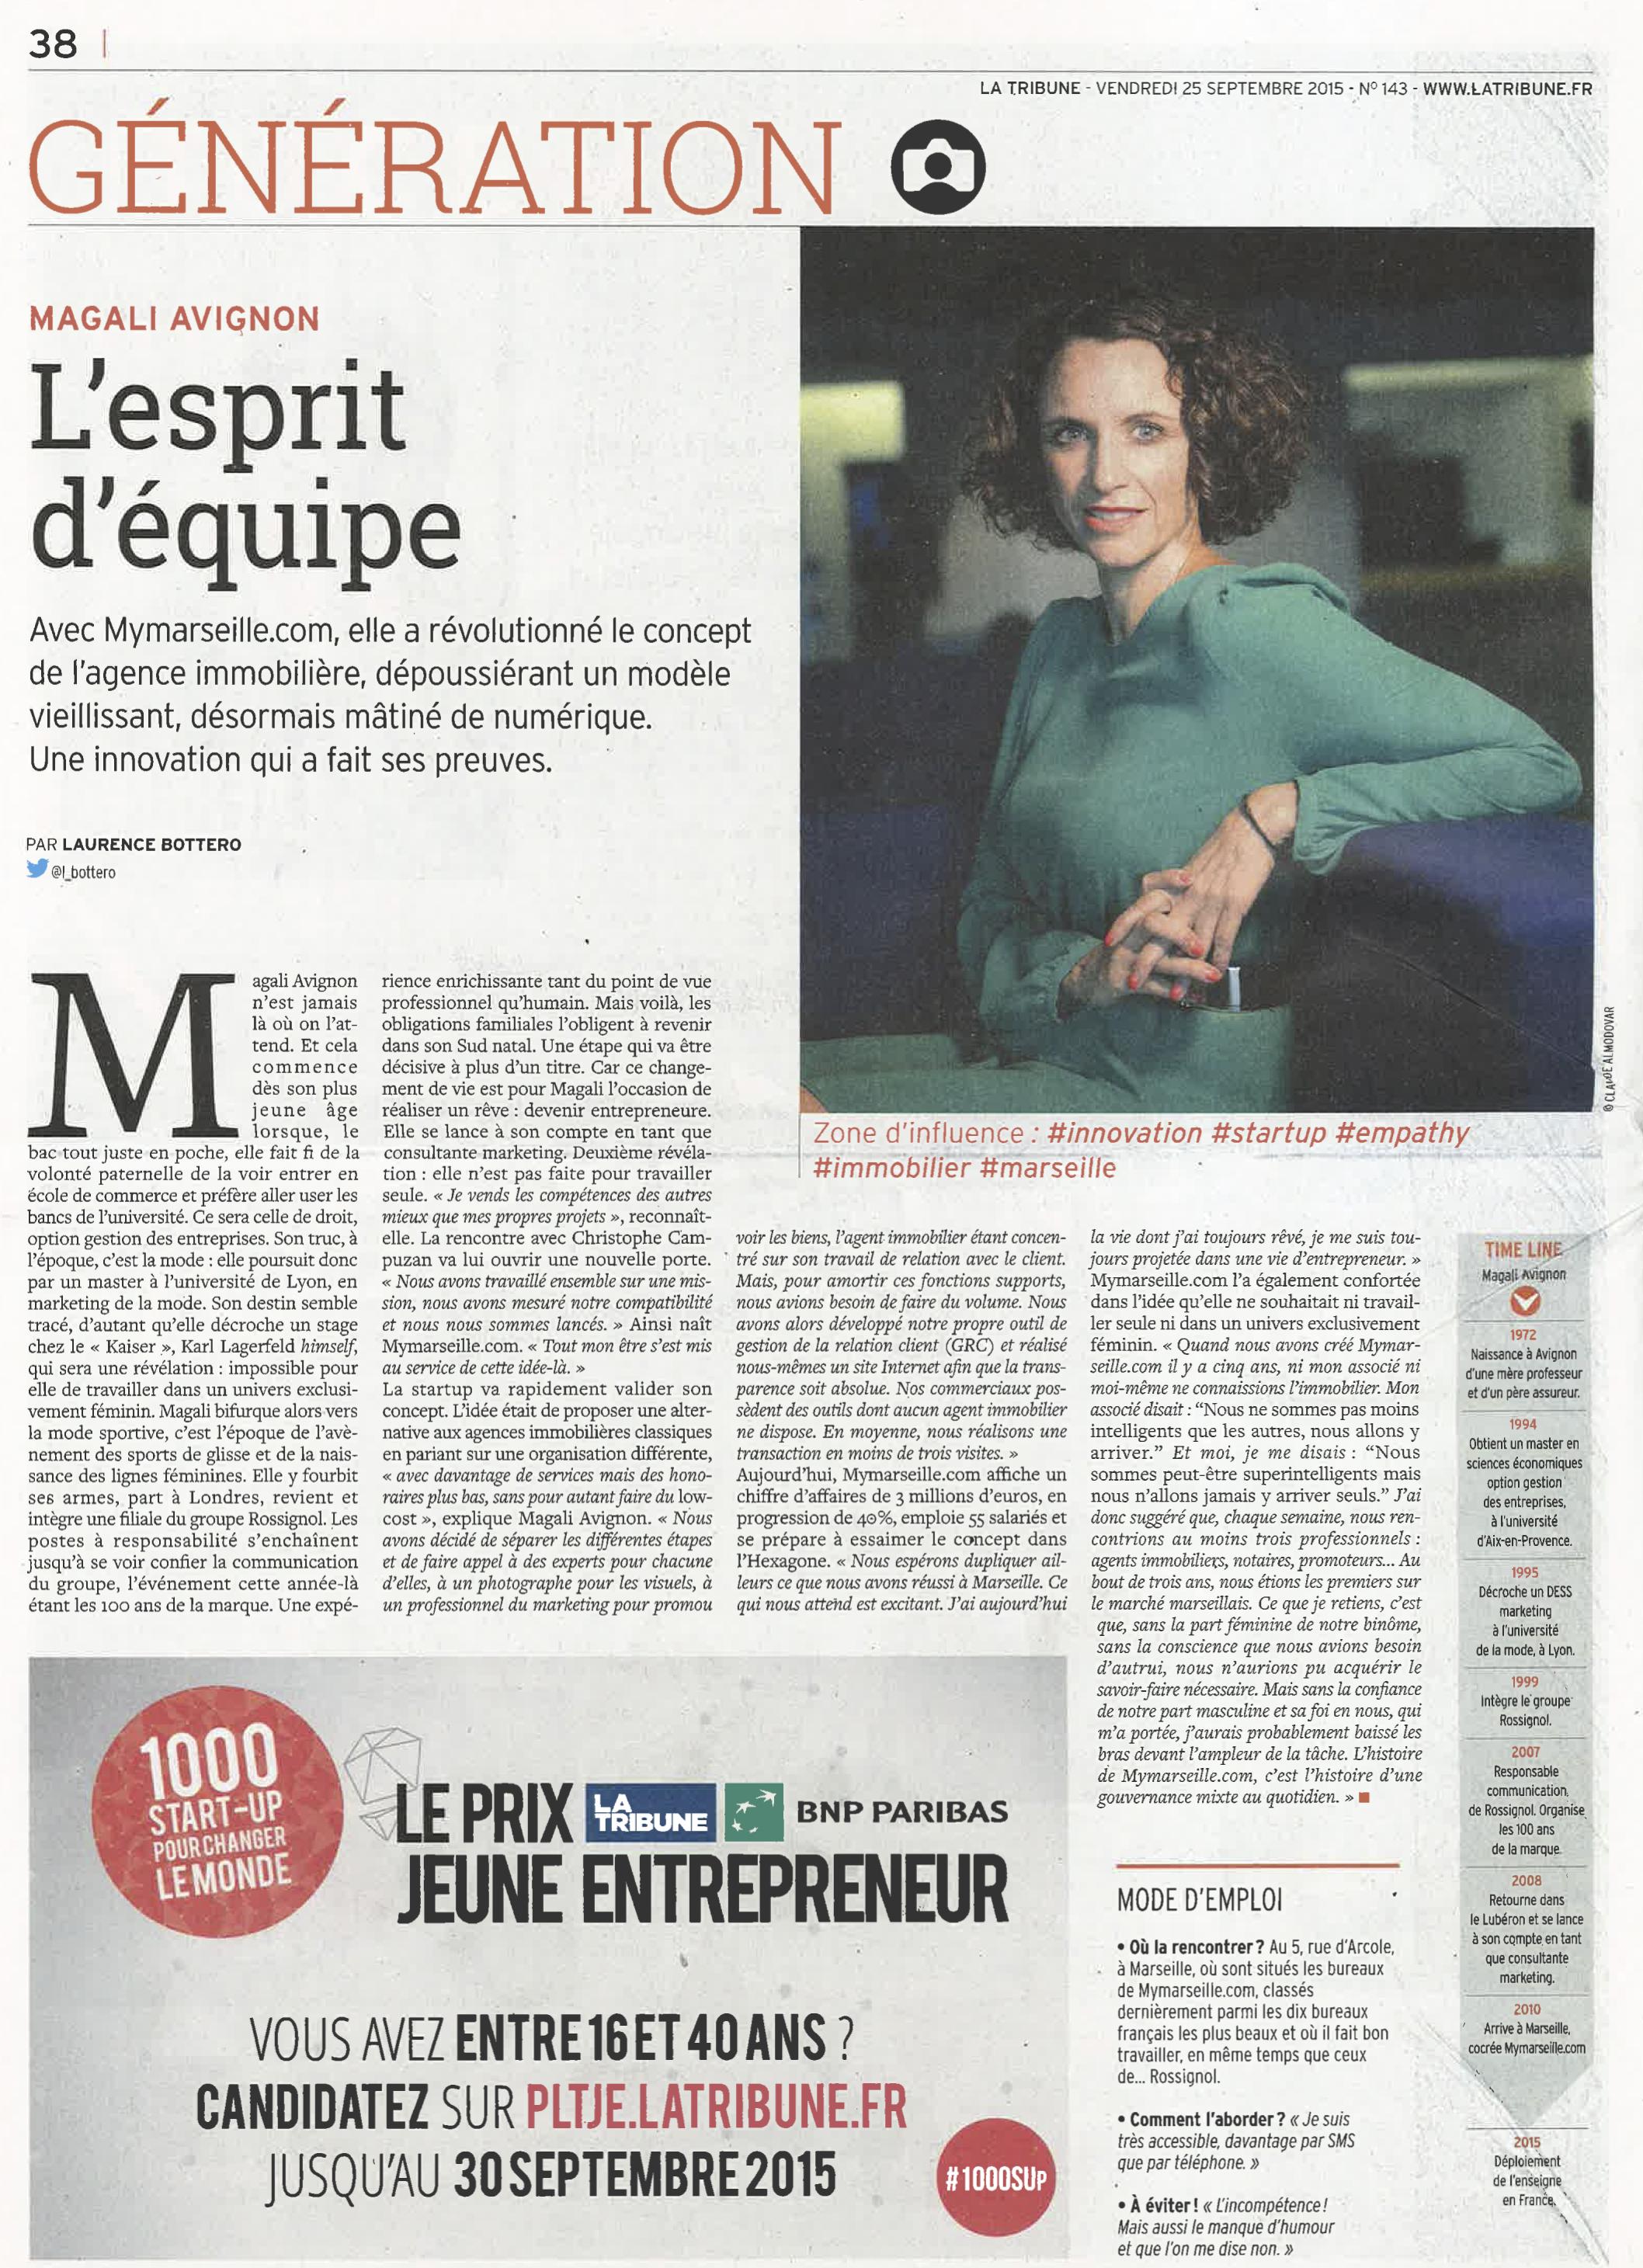 La Tribune, Magali Avignon directrice générale de mymarseille.com, site immobilier à Marseille.